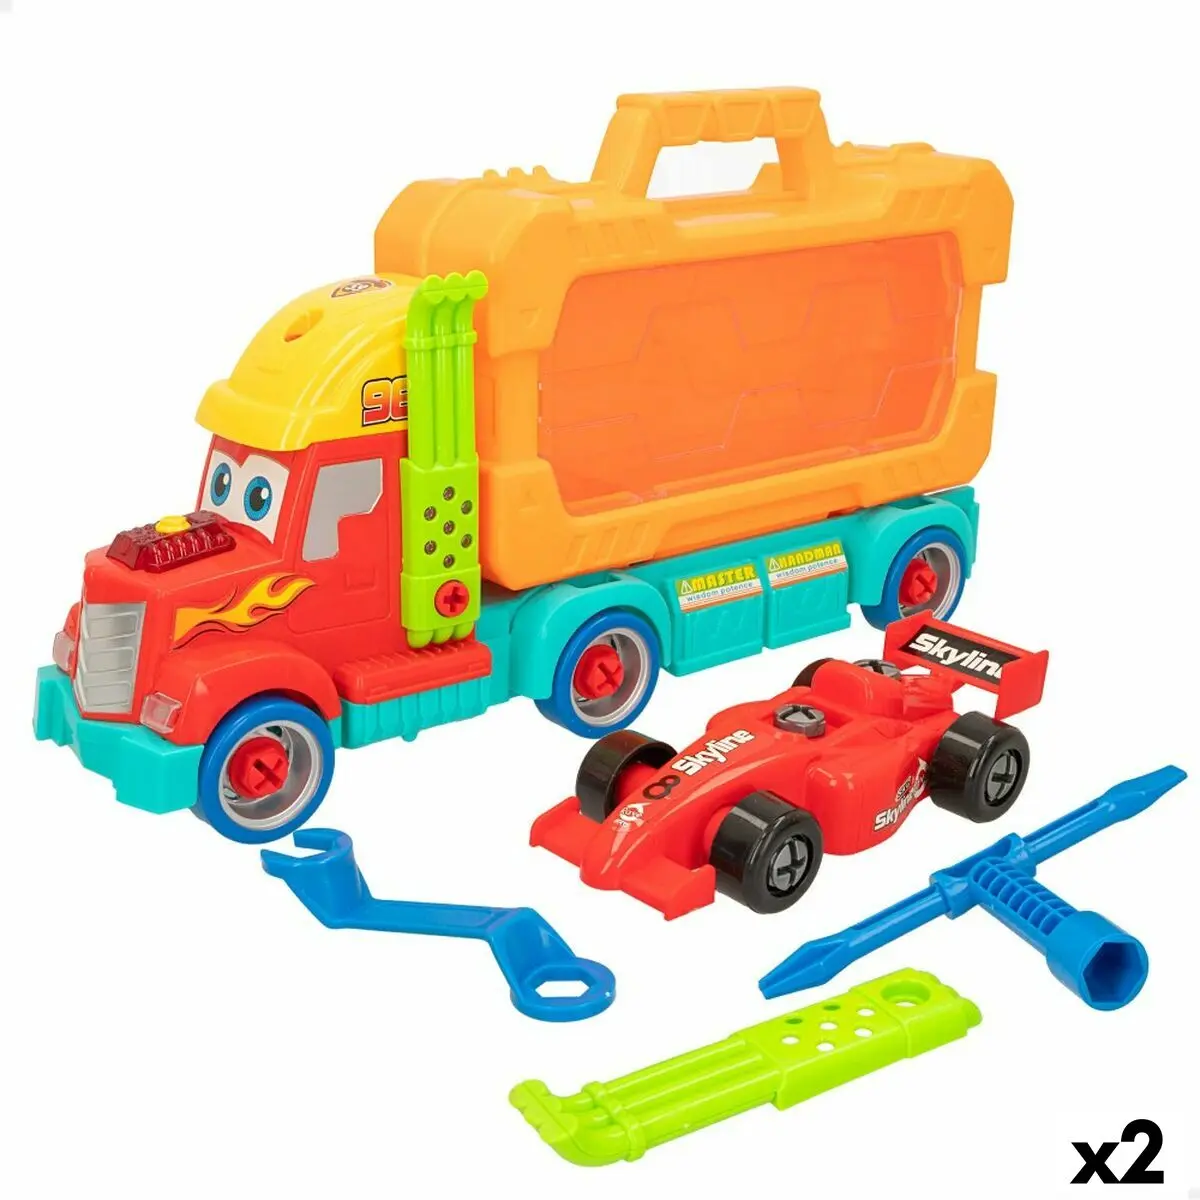 Camion Porta-veicoli Colorbaby 43 x 23,5 x 10,5 cm (2 Unità)